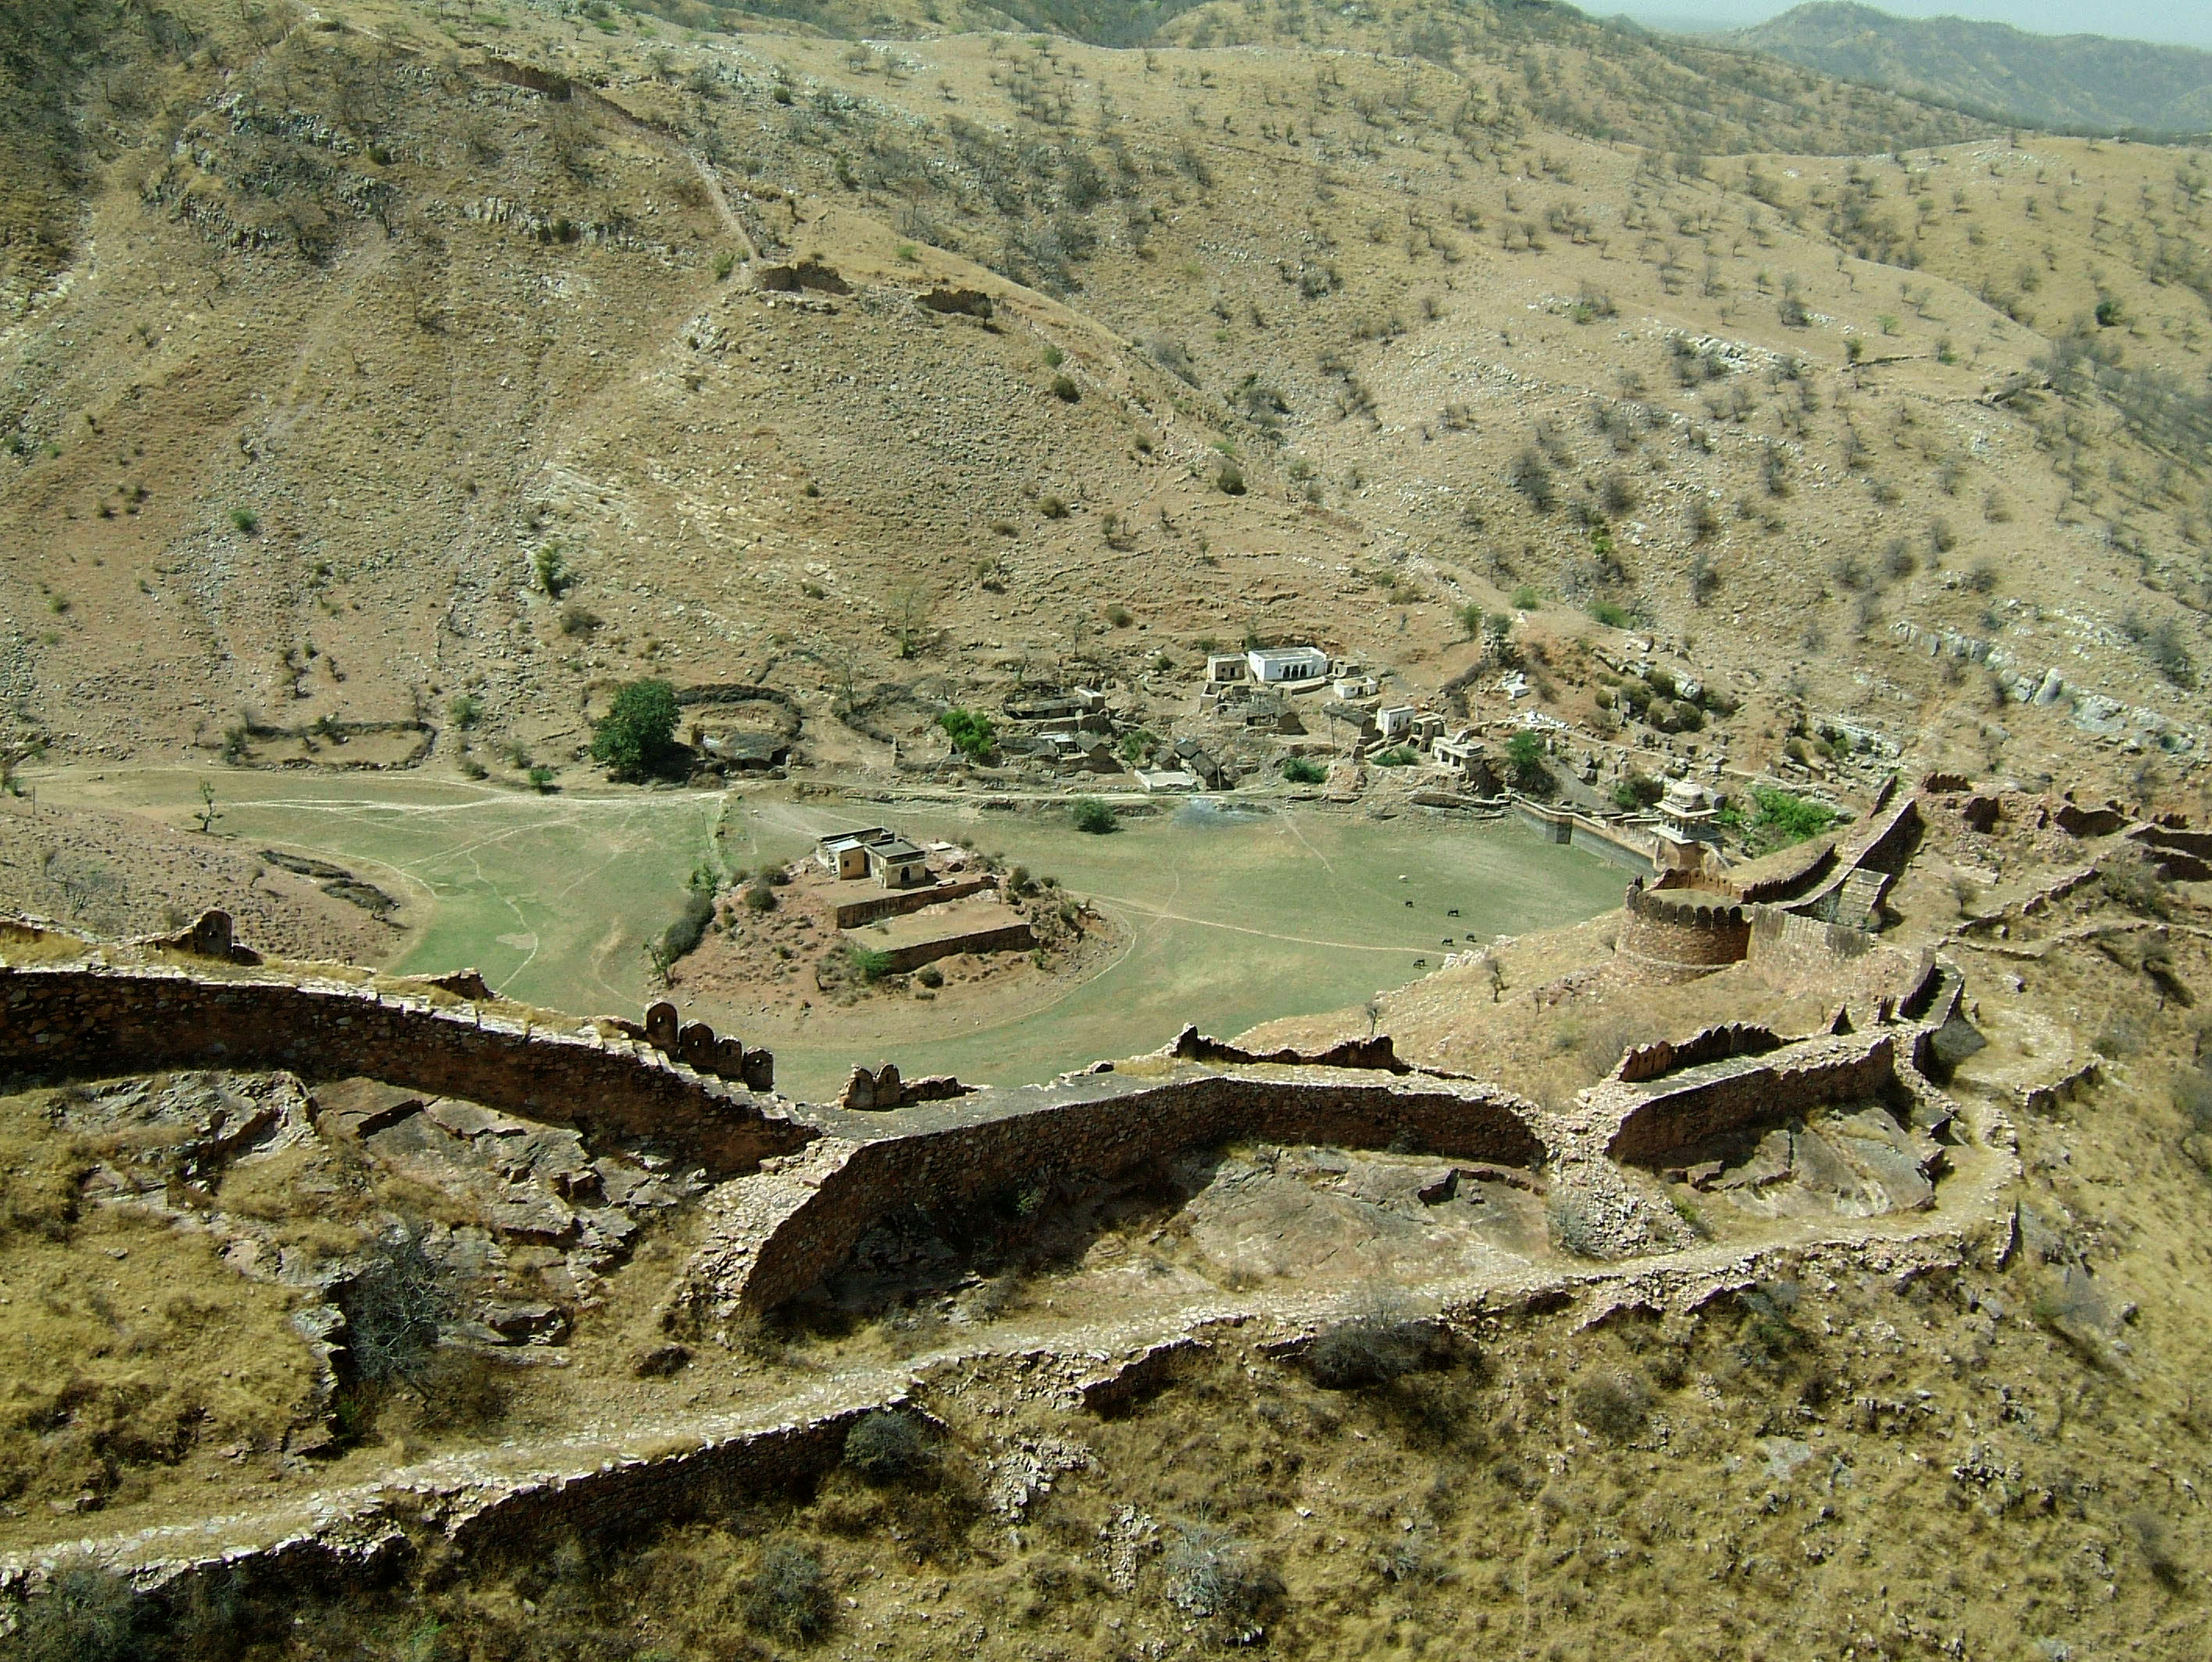 Rajasthan Jaipur Jaigarh Fort Jaivana cannon India Apr 2004 07